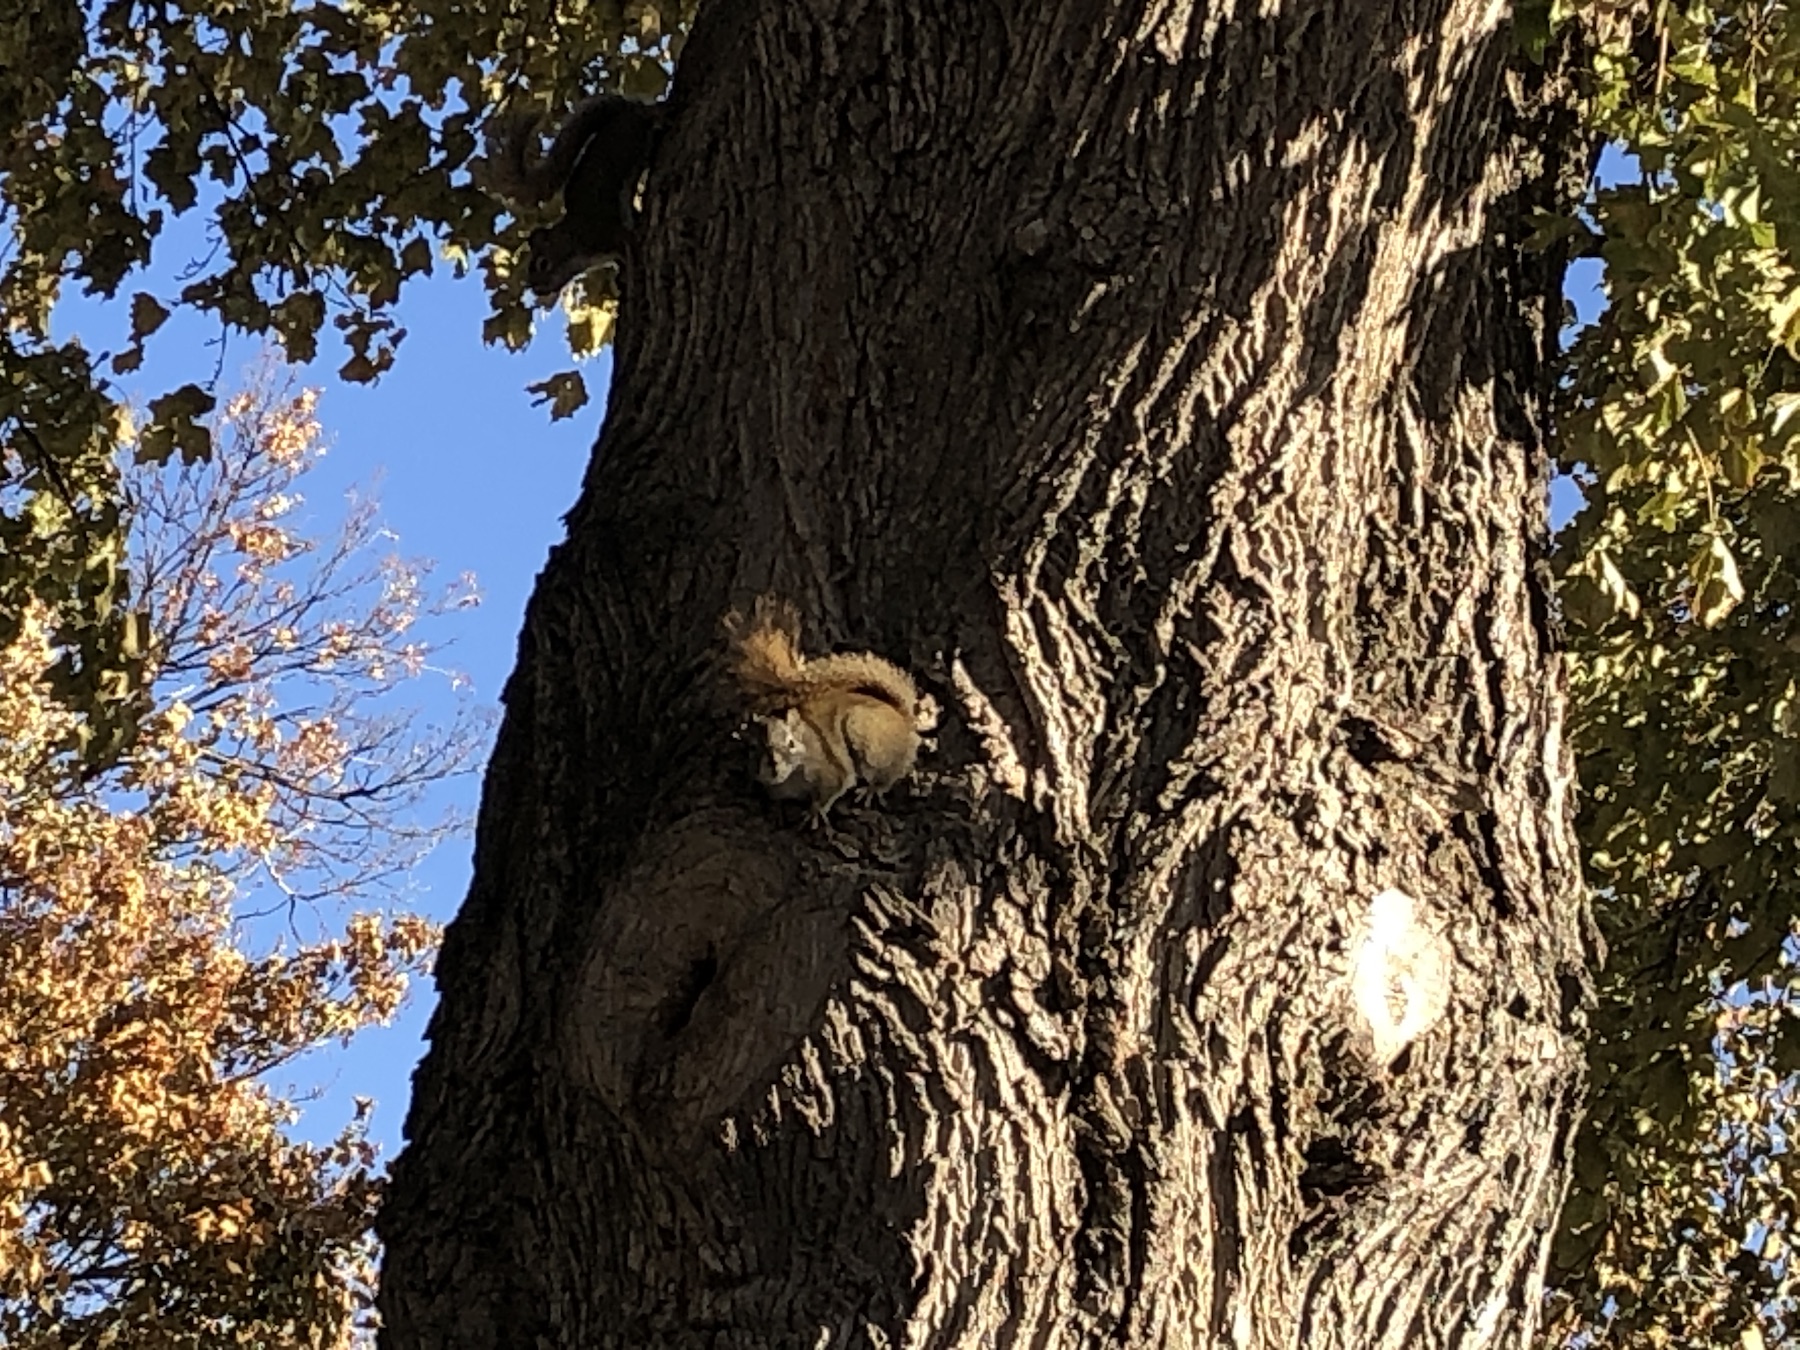 squirrels